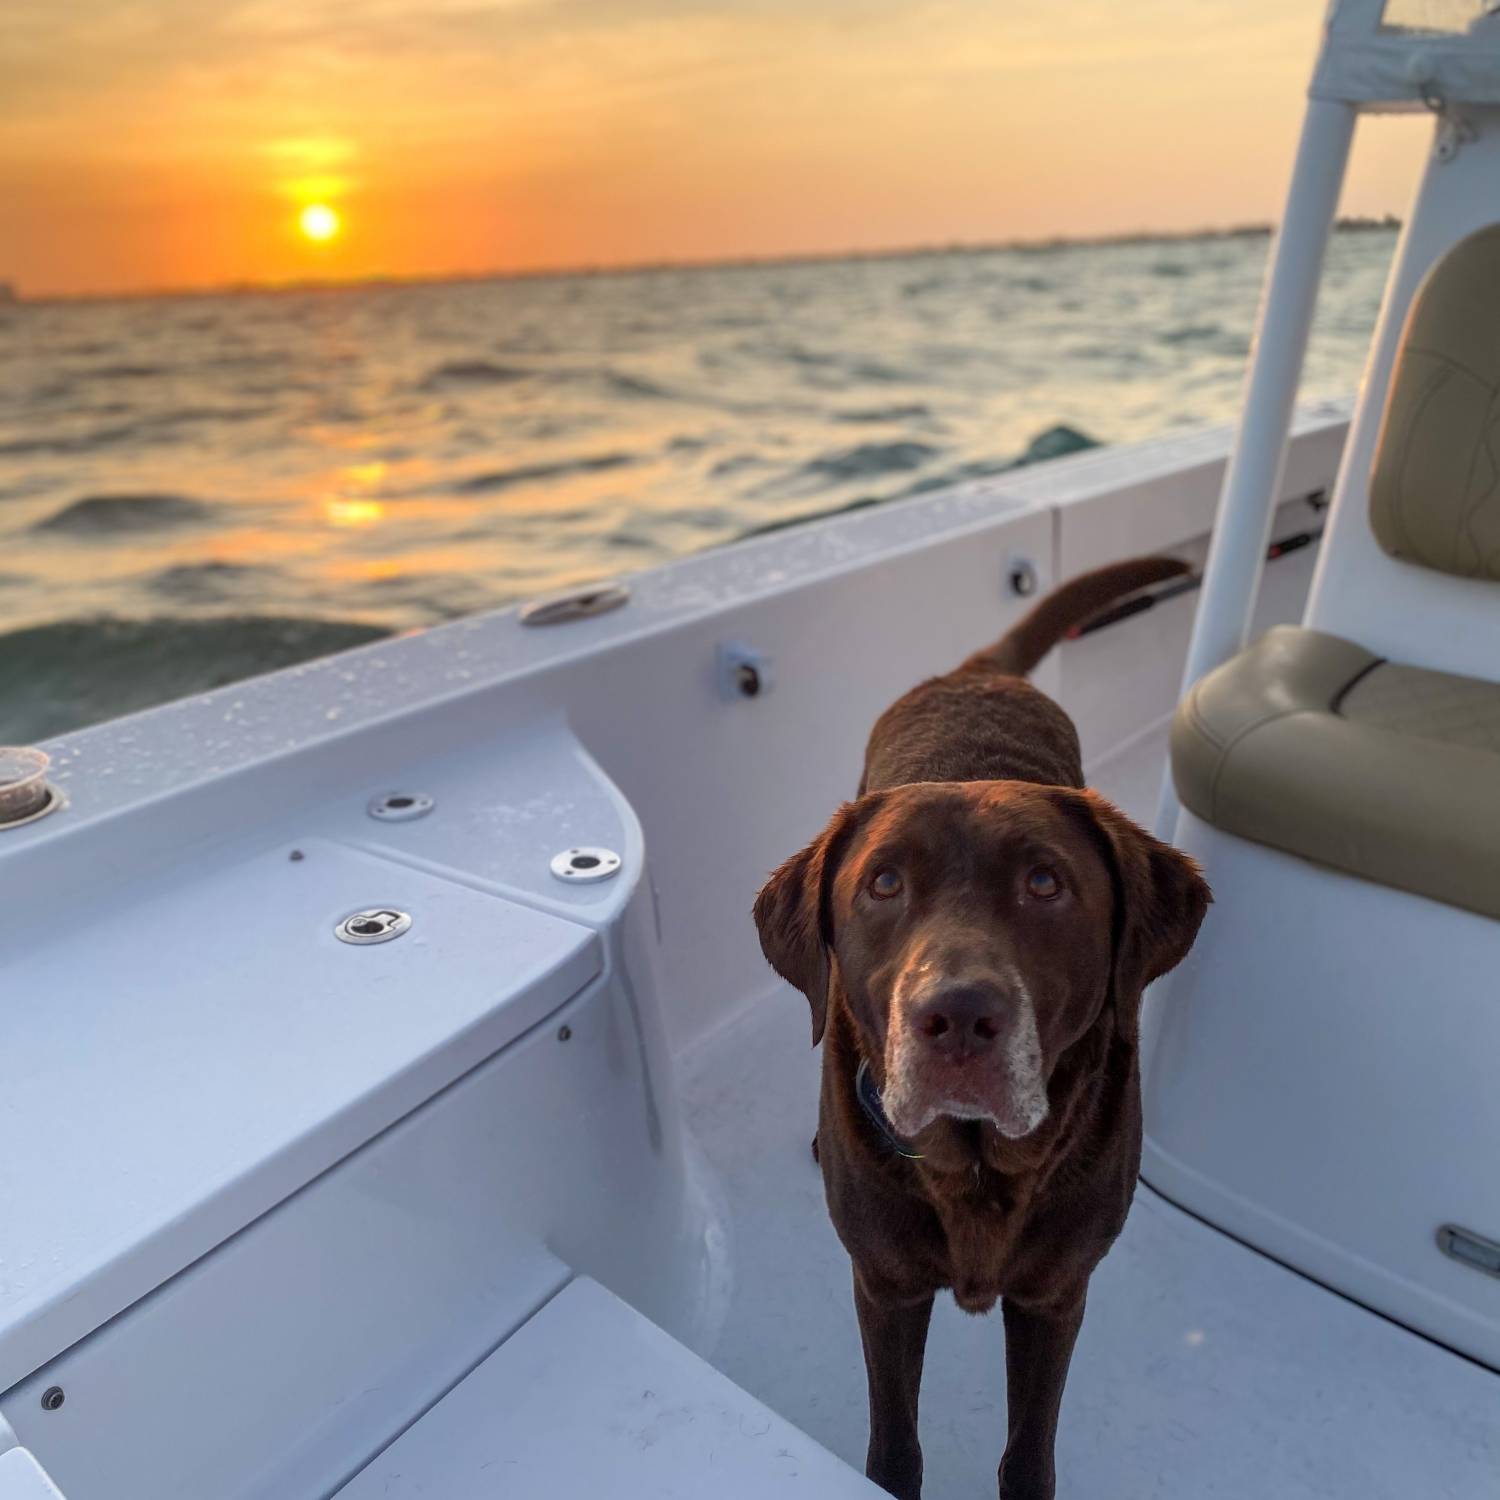 Ruger, our labrador, enjoying a keys sunset